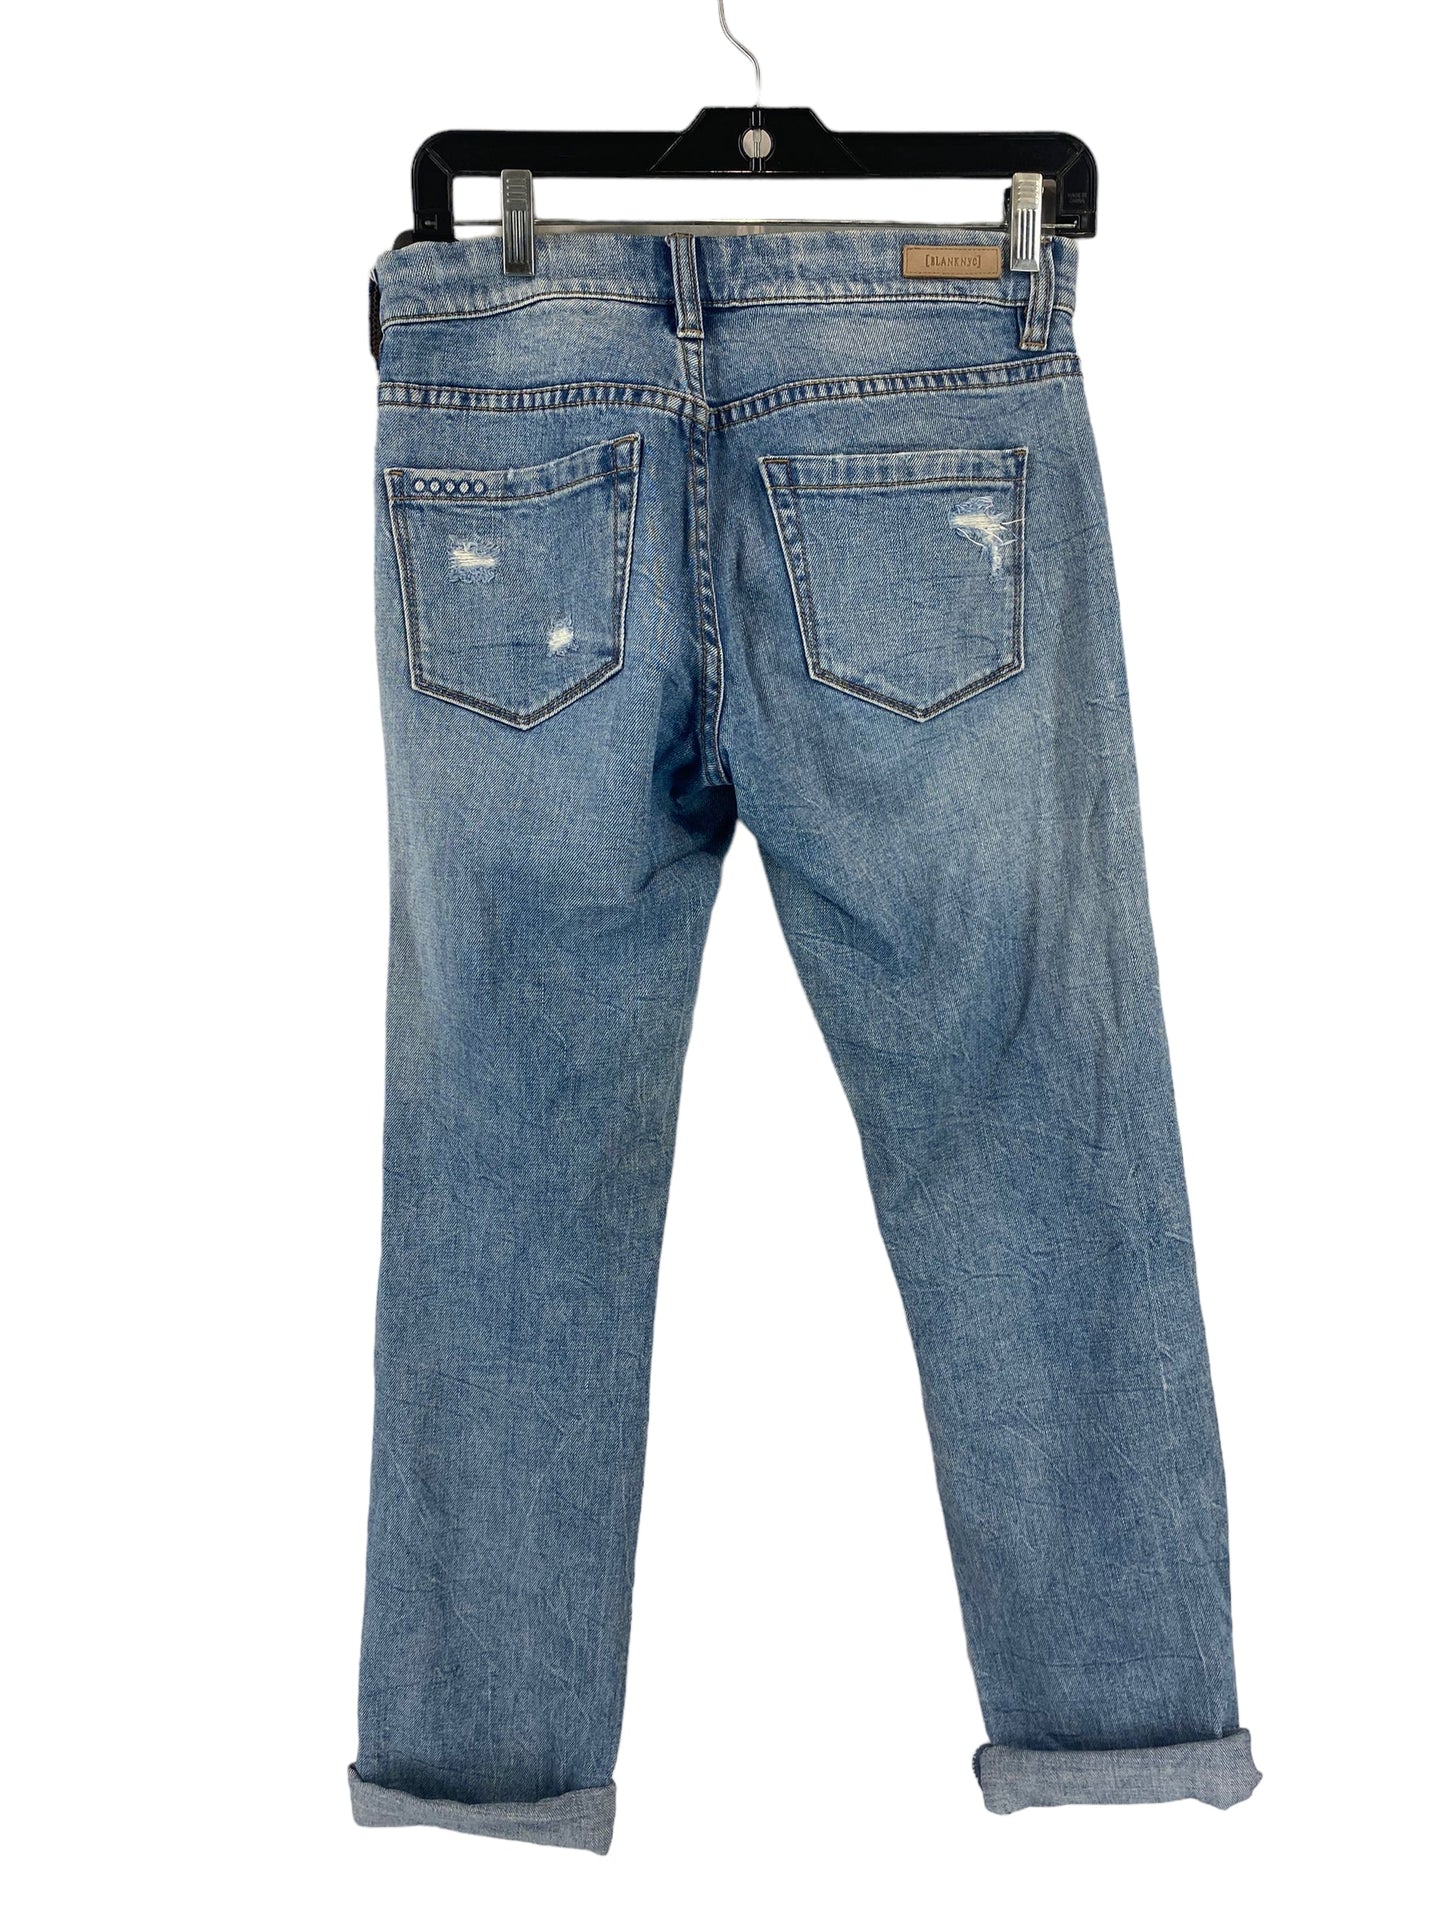 Jeans Skinny By Blanknyc  Size: 24